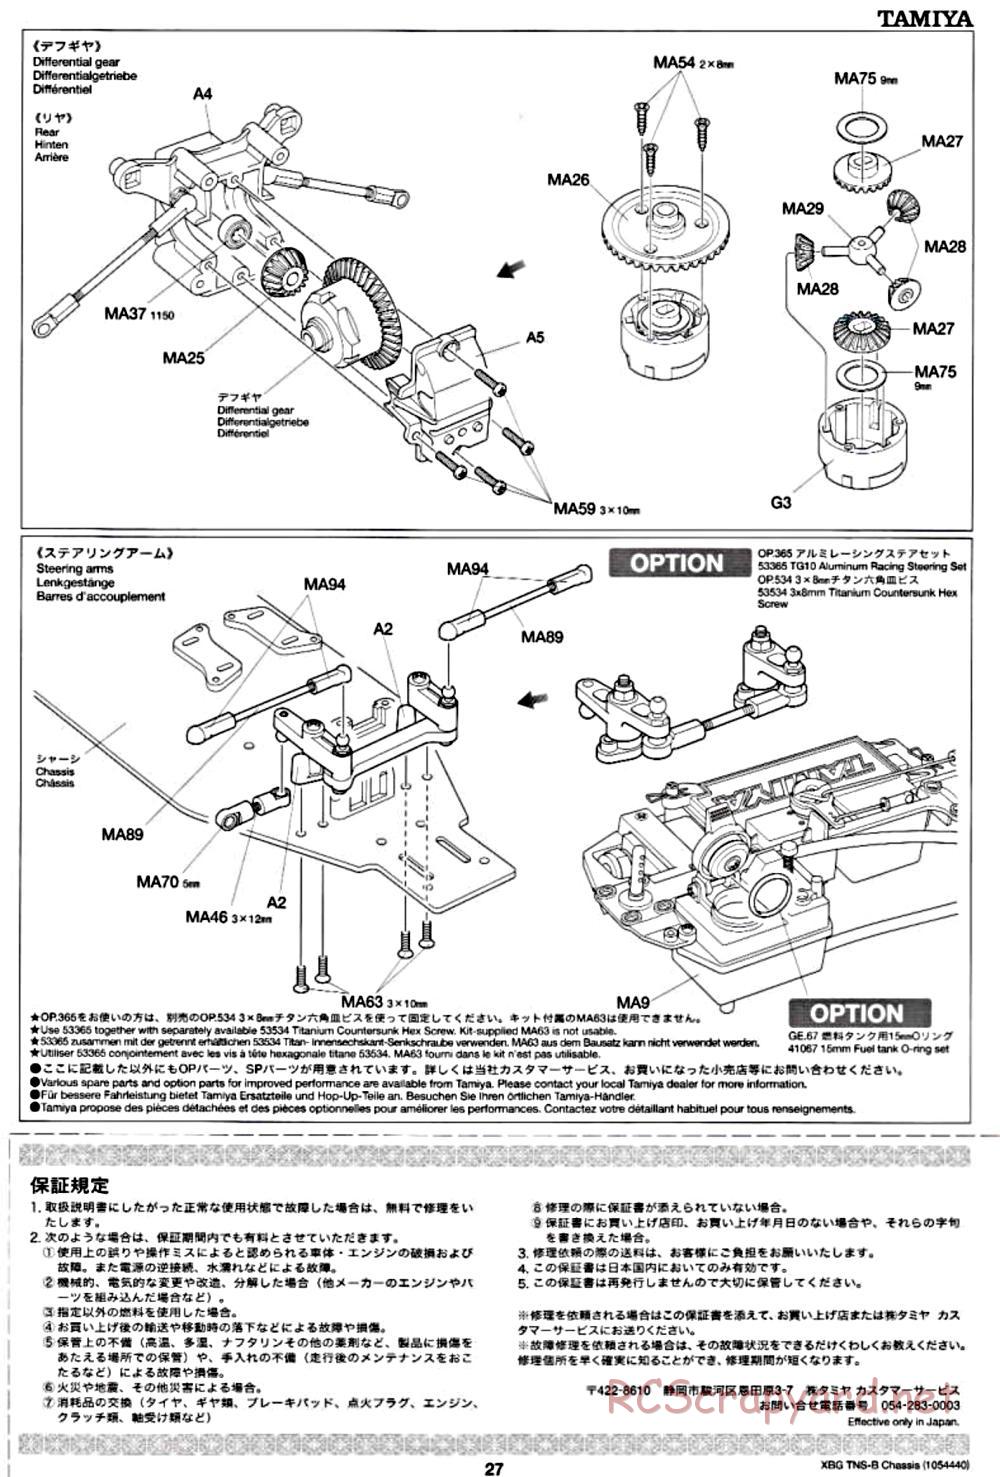 Tamiya - TNS-B Chassis - Manual - Page 27